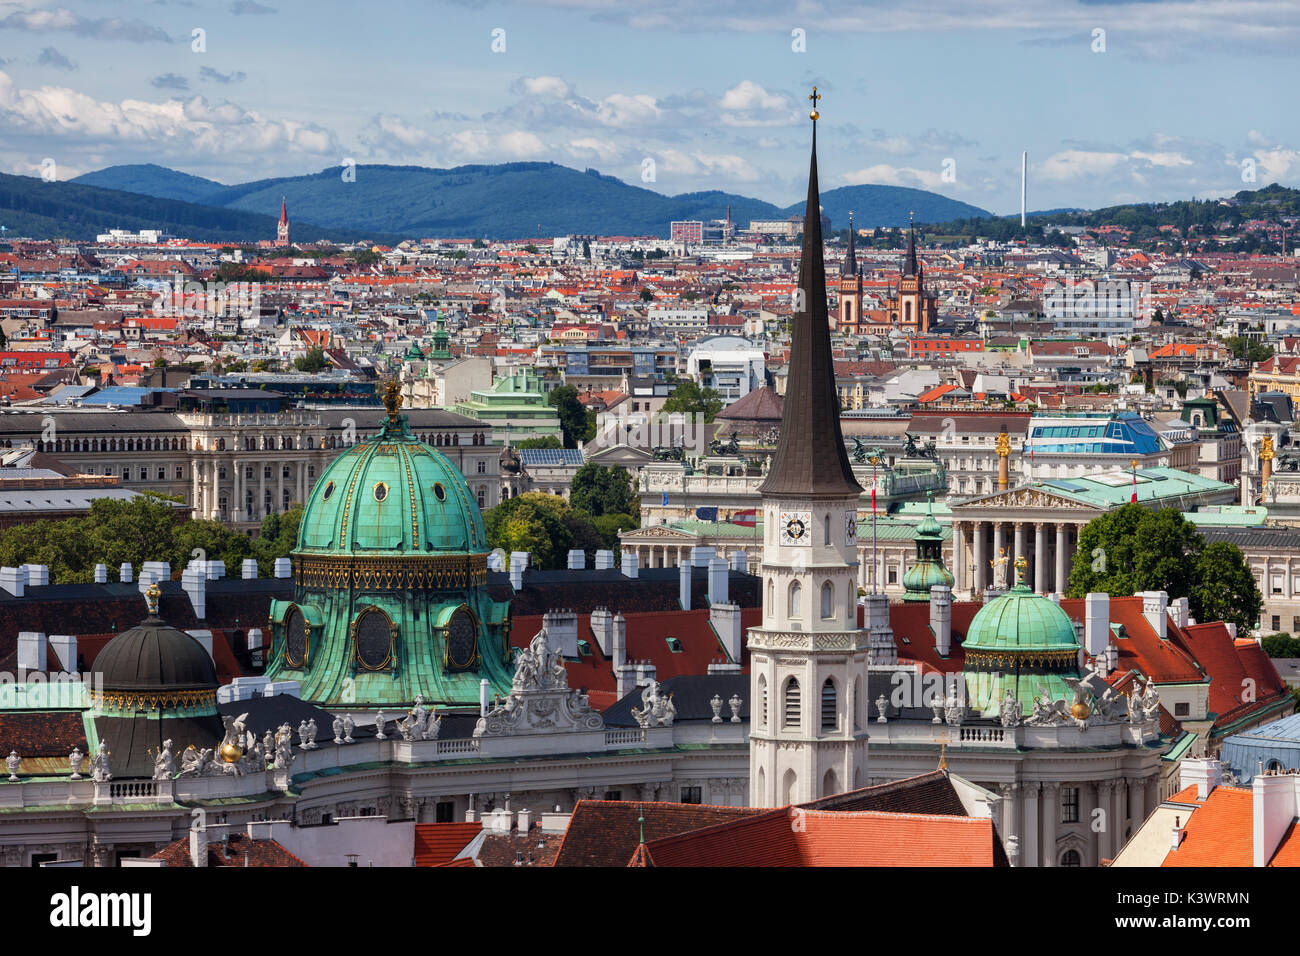 Austria, Vienna, capitale paesaggio urbano della città con la cupola del Palazzo di Hofburg e la torre della chiesa di St. Michael (Michaelerkirche). Foto Stock